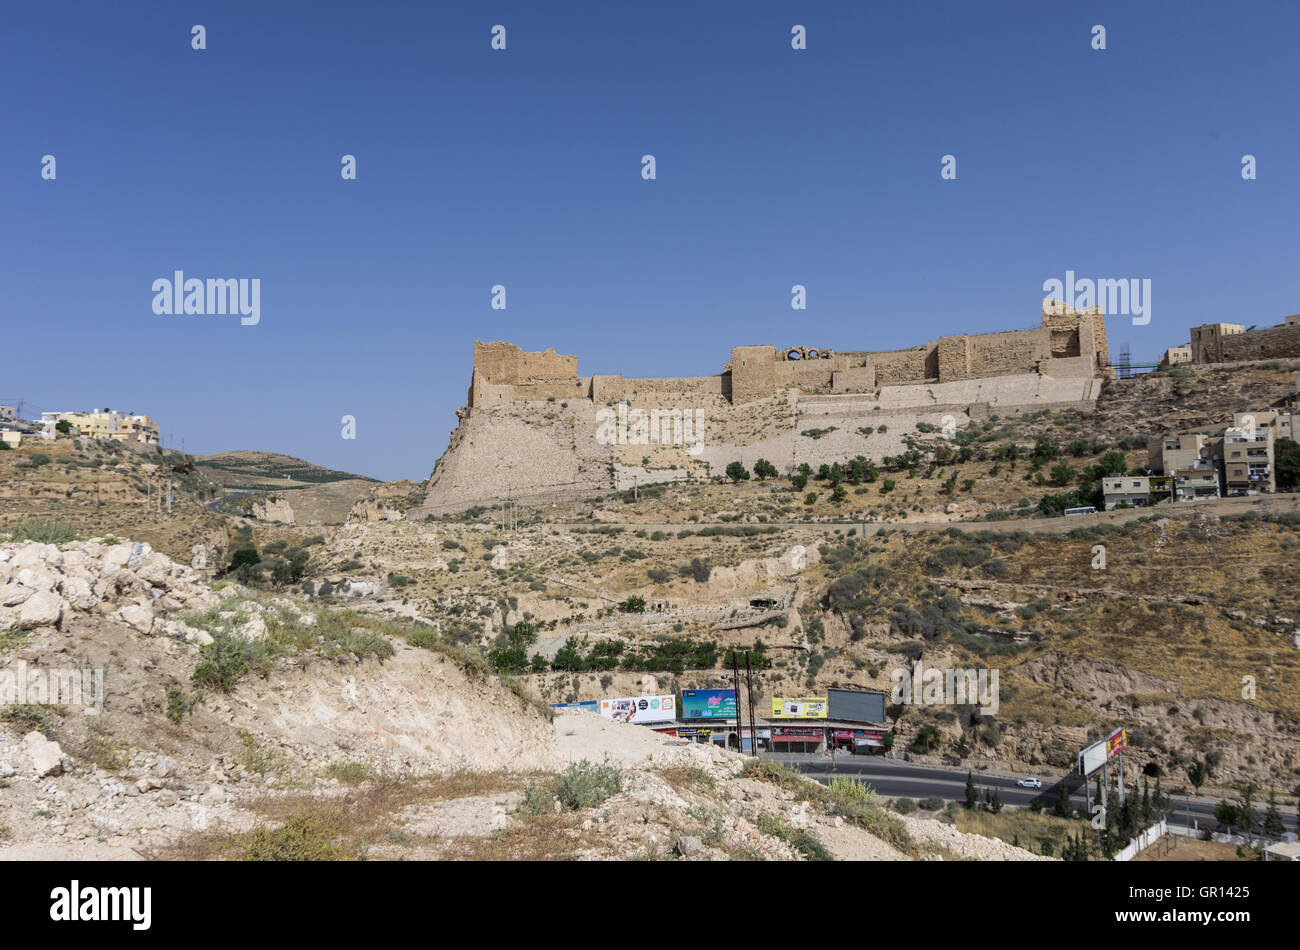 Al-Karak, Jodan - June 03, 2016: View to the crusader castle Kerak (Al karak) in Jordan Stock Photo